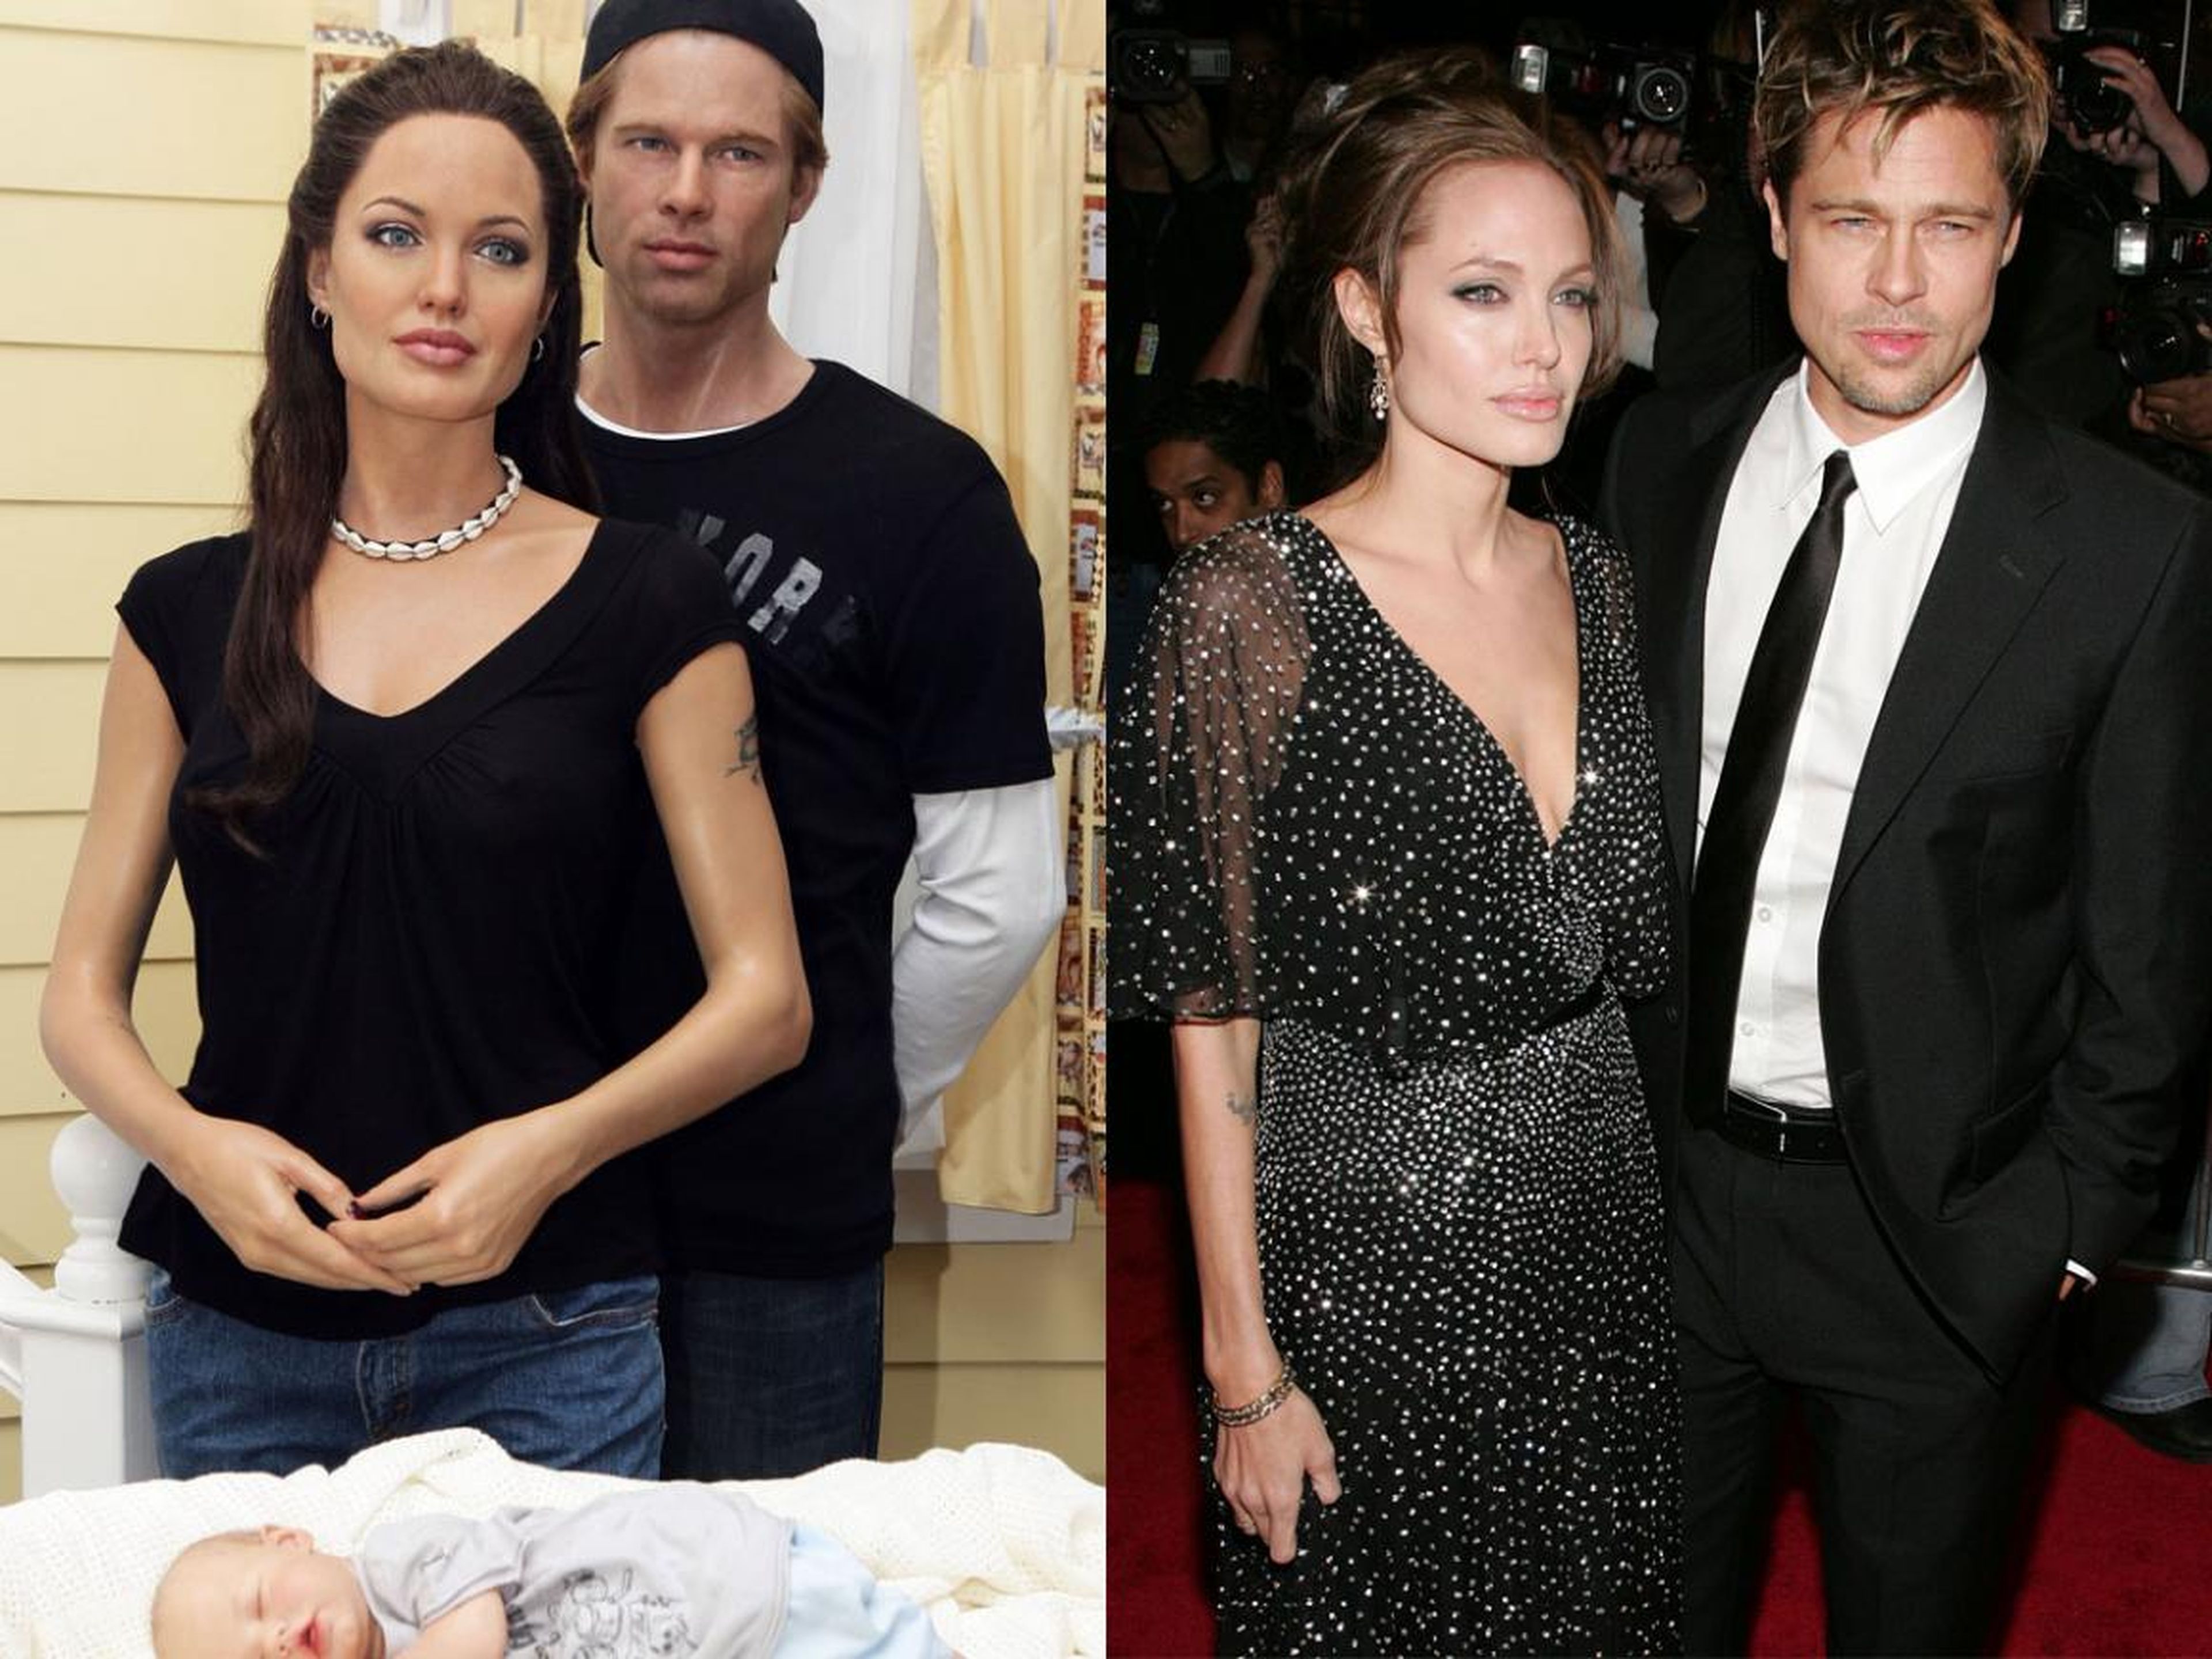 A la izquierda están las figuras de cera de Shiloh Jolie-Pitt, Angelina Jolie y Brad Pitt. A la derecha están Jolie y Pitt en el estreno de "El buen pastor" en diciembre de 2006.